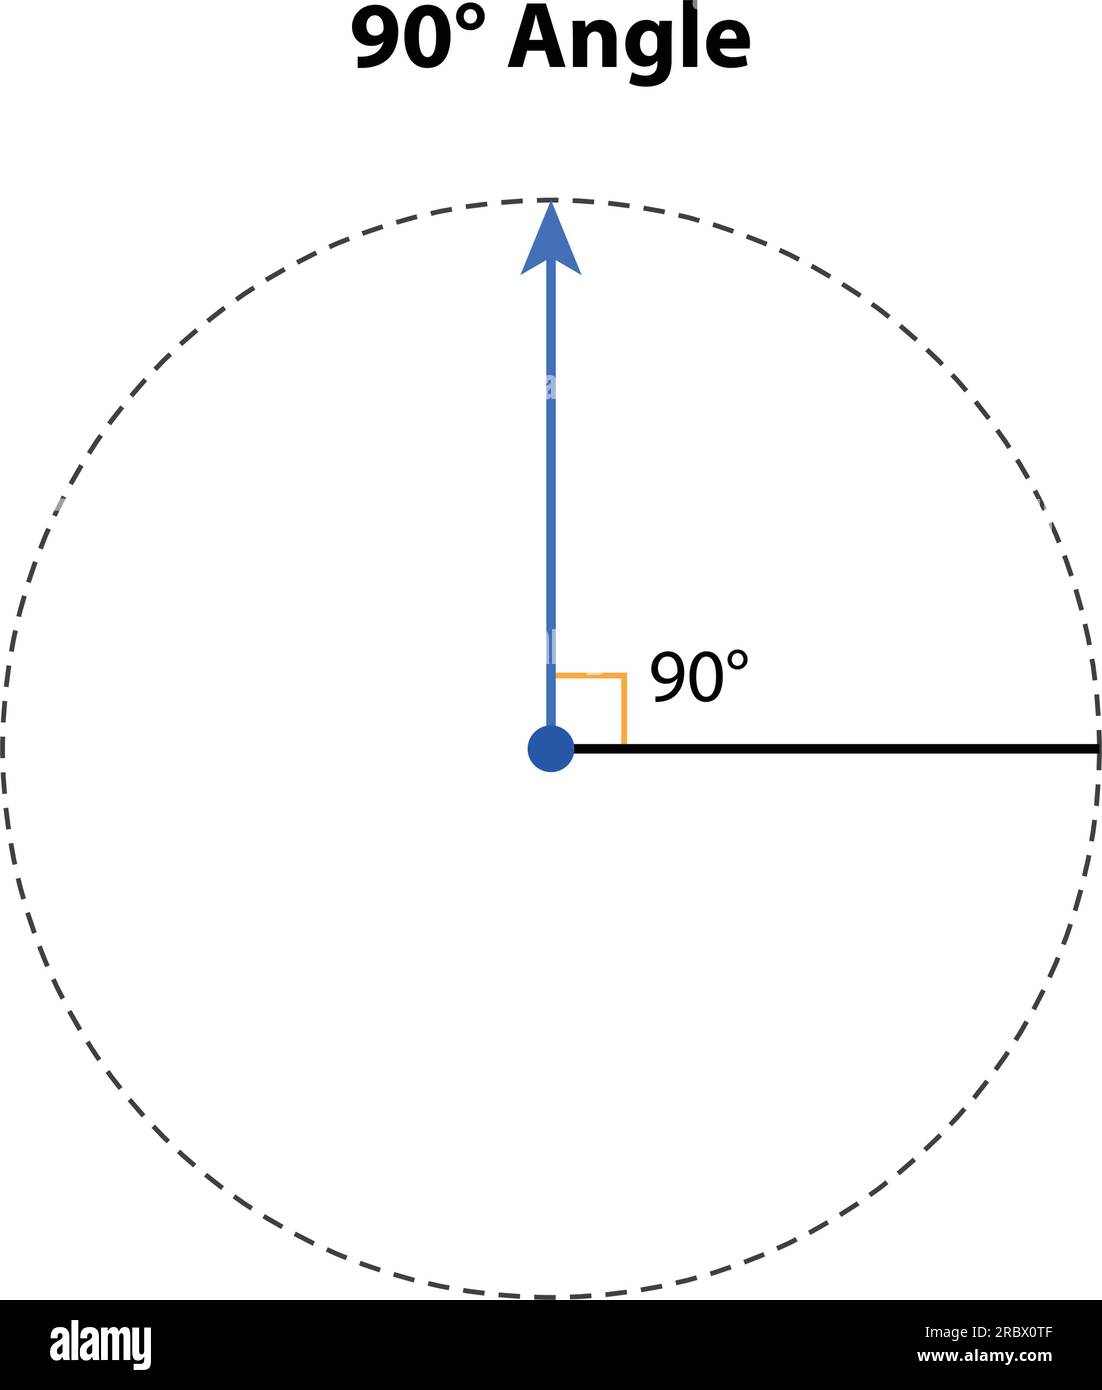 Ángulo de 90°. ilustración vectorial. matemáticas geométricas. aislado  sobre fondo blanco Imagen Vector de stock - Alamy